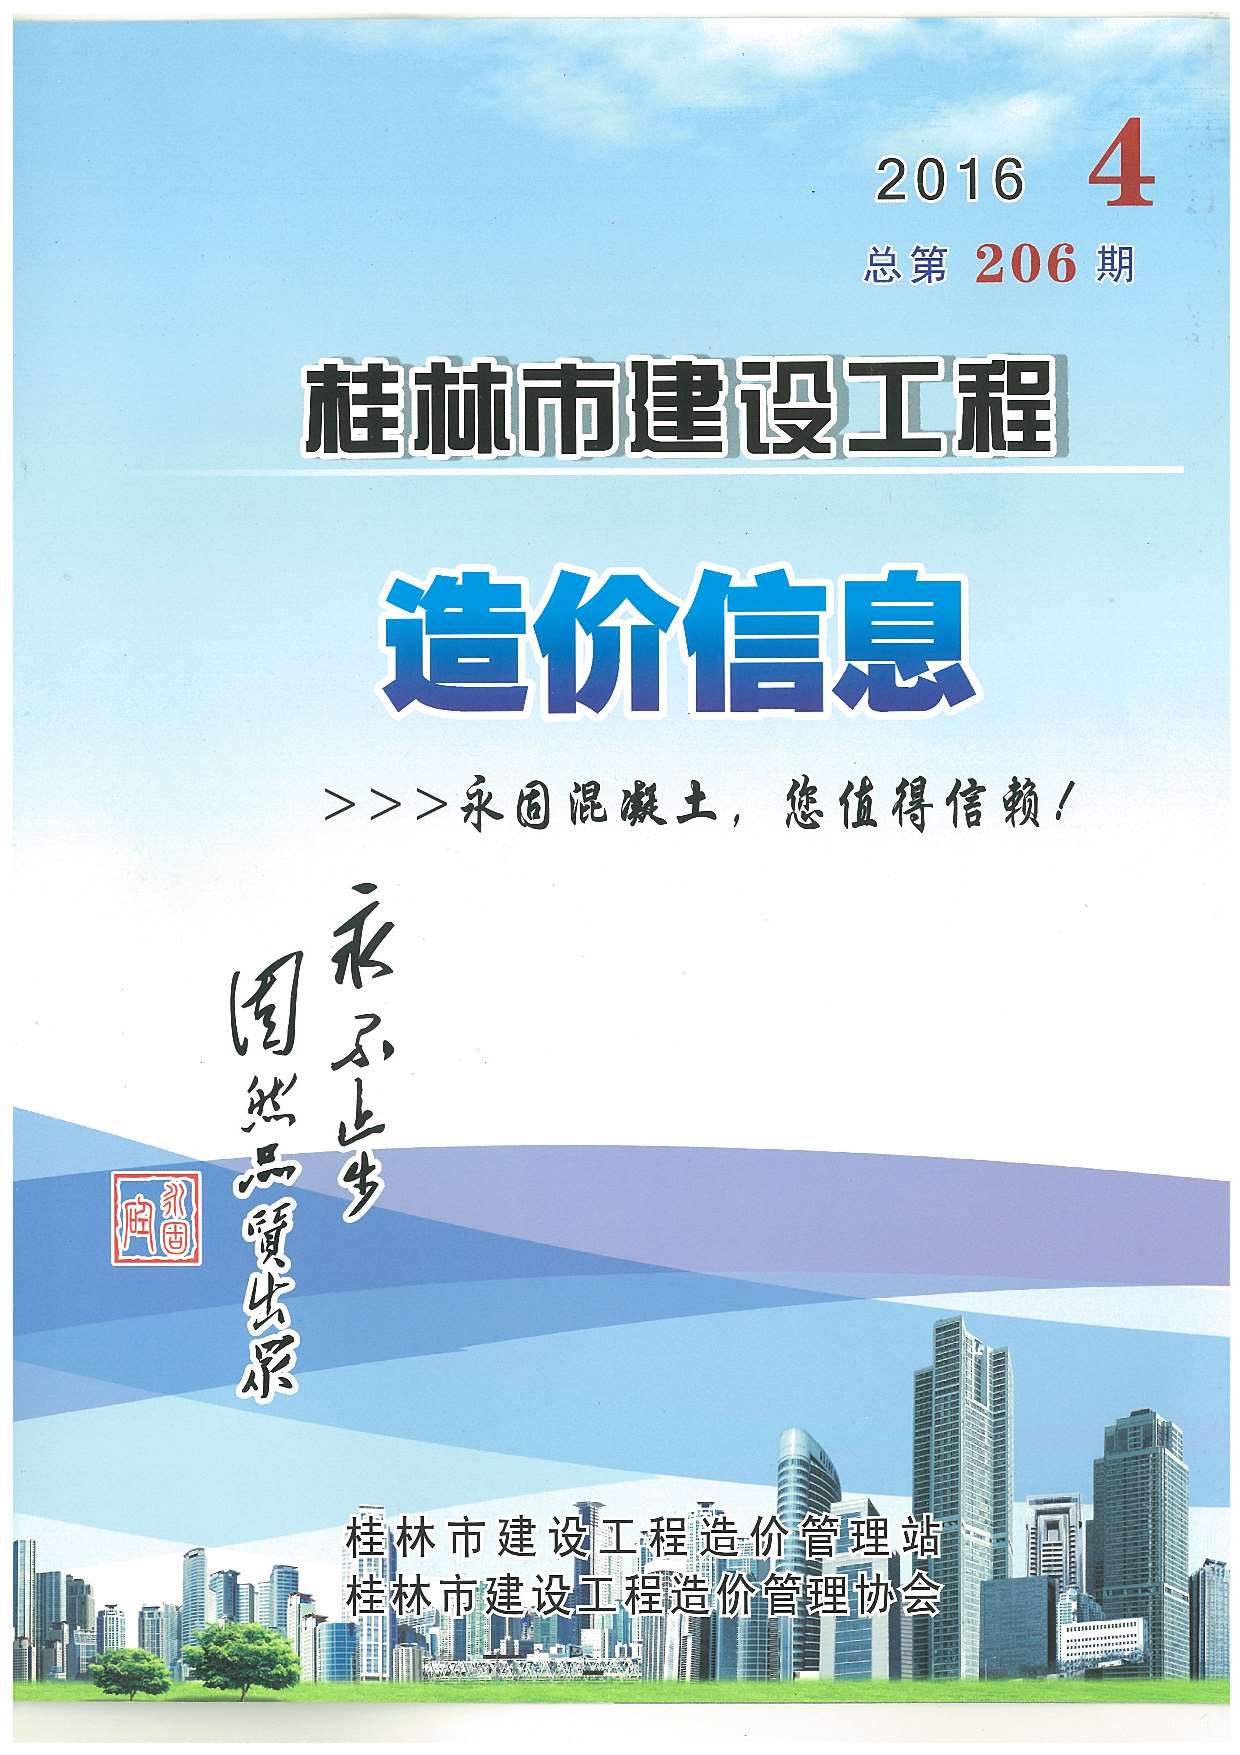 桂林市2016年4月建设工程造价信息